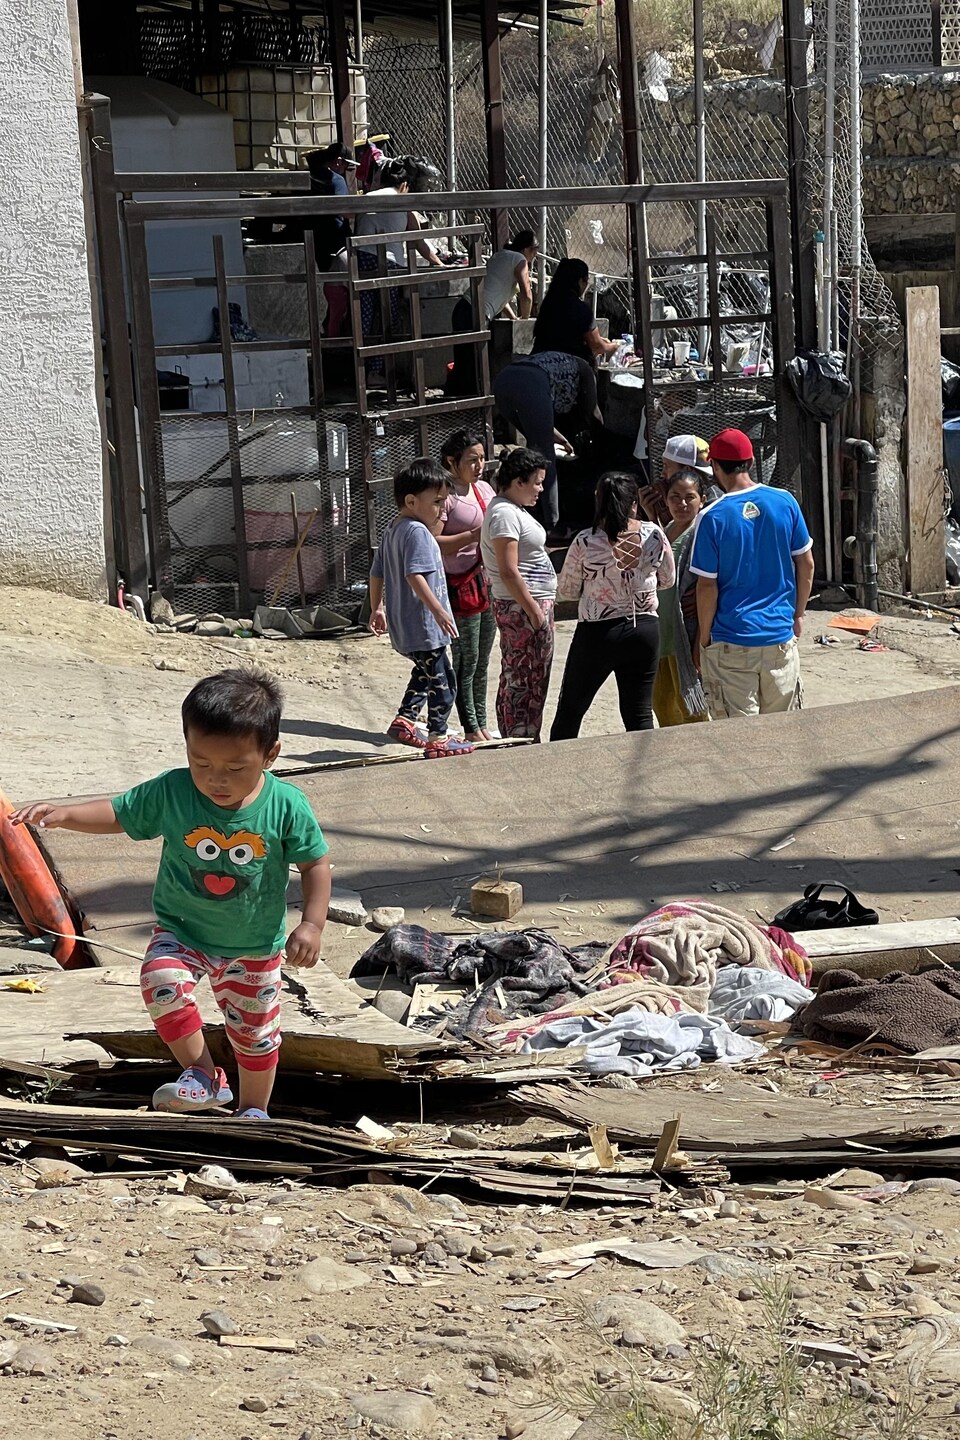 Des enfants jouent dans un quartier pauvre de Tijuana.